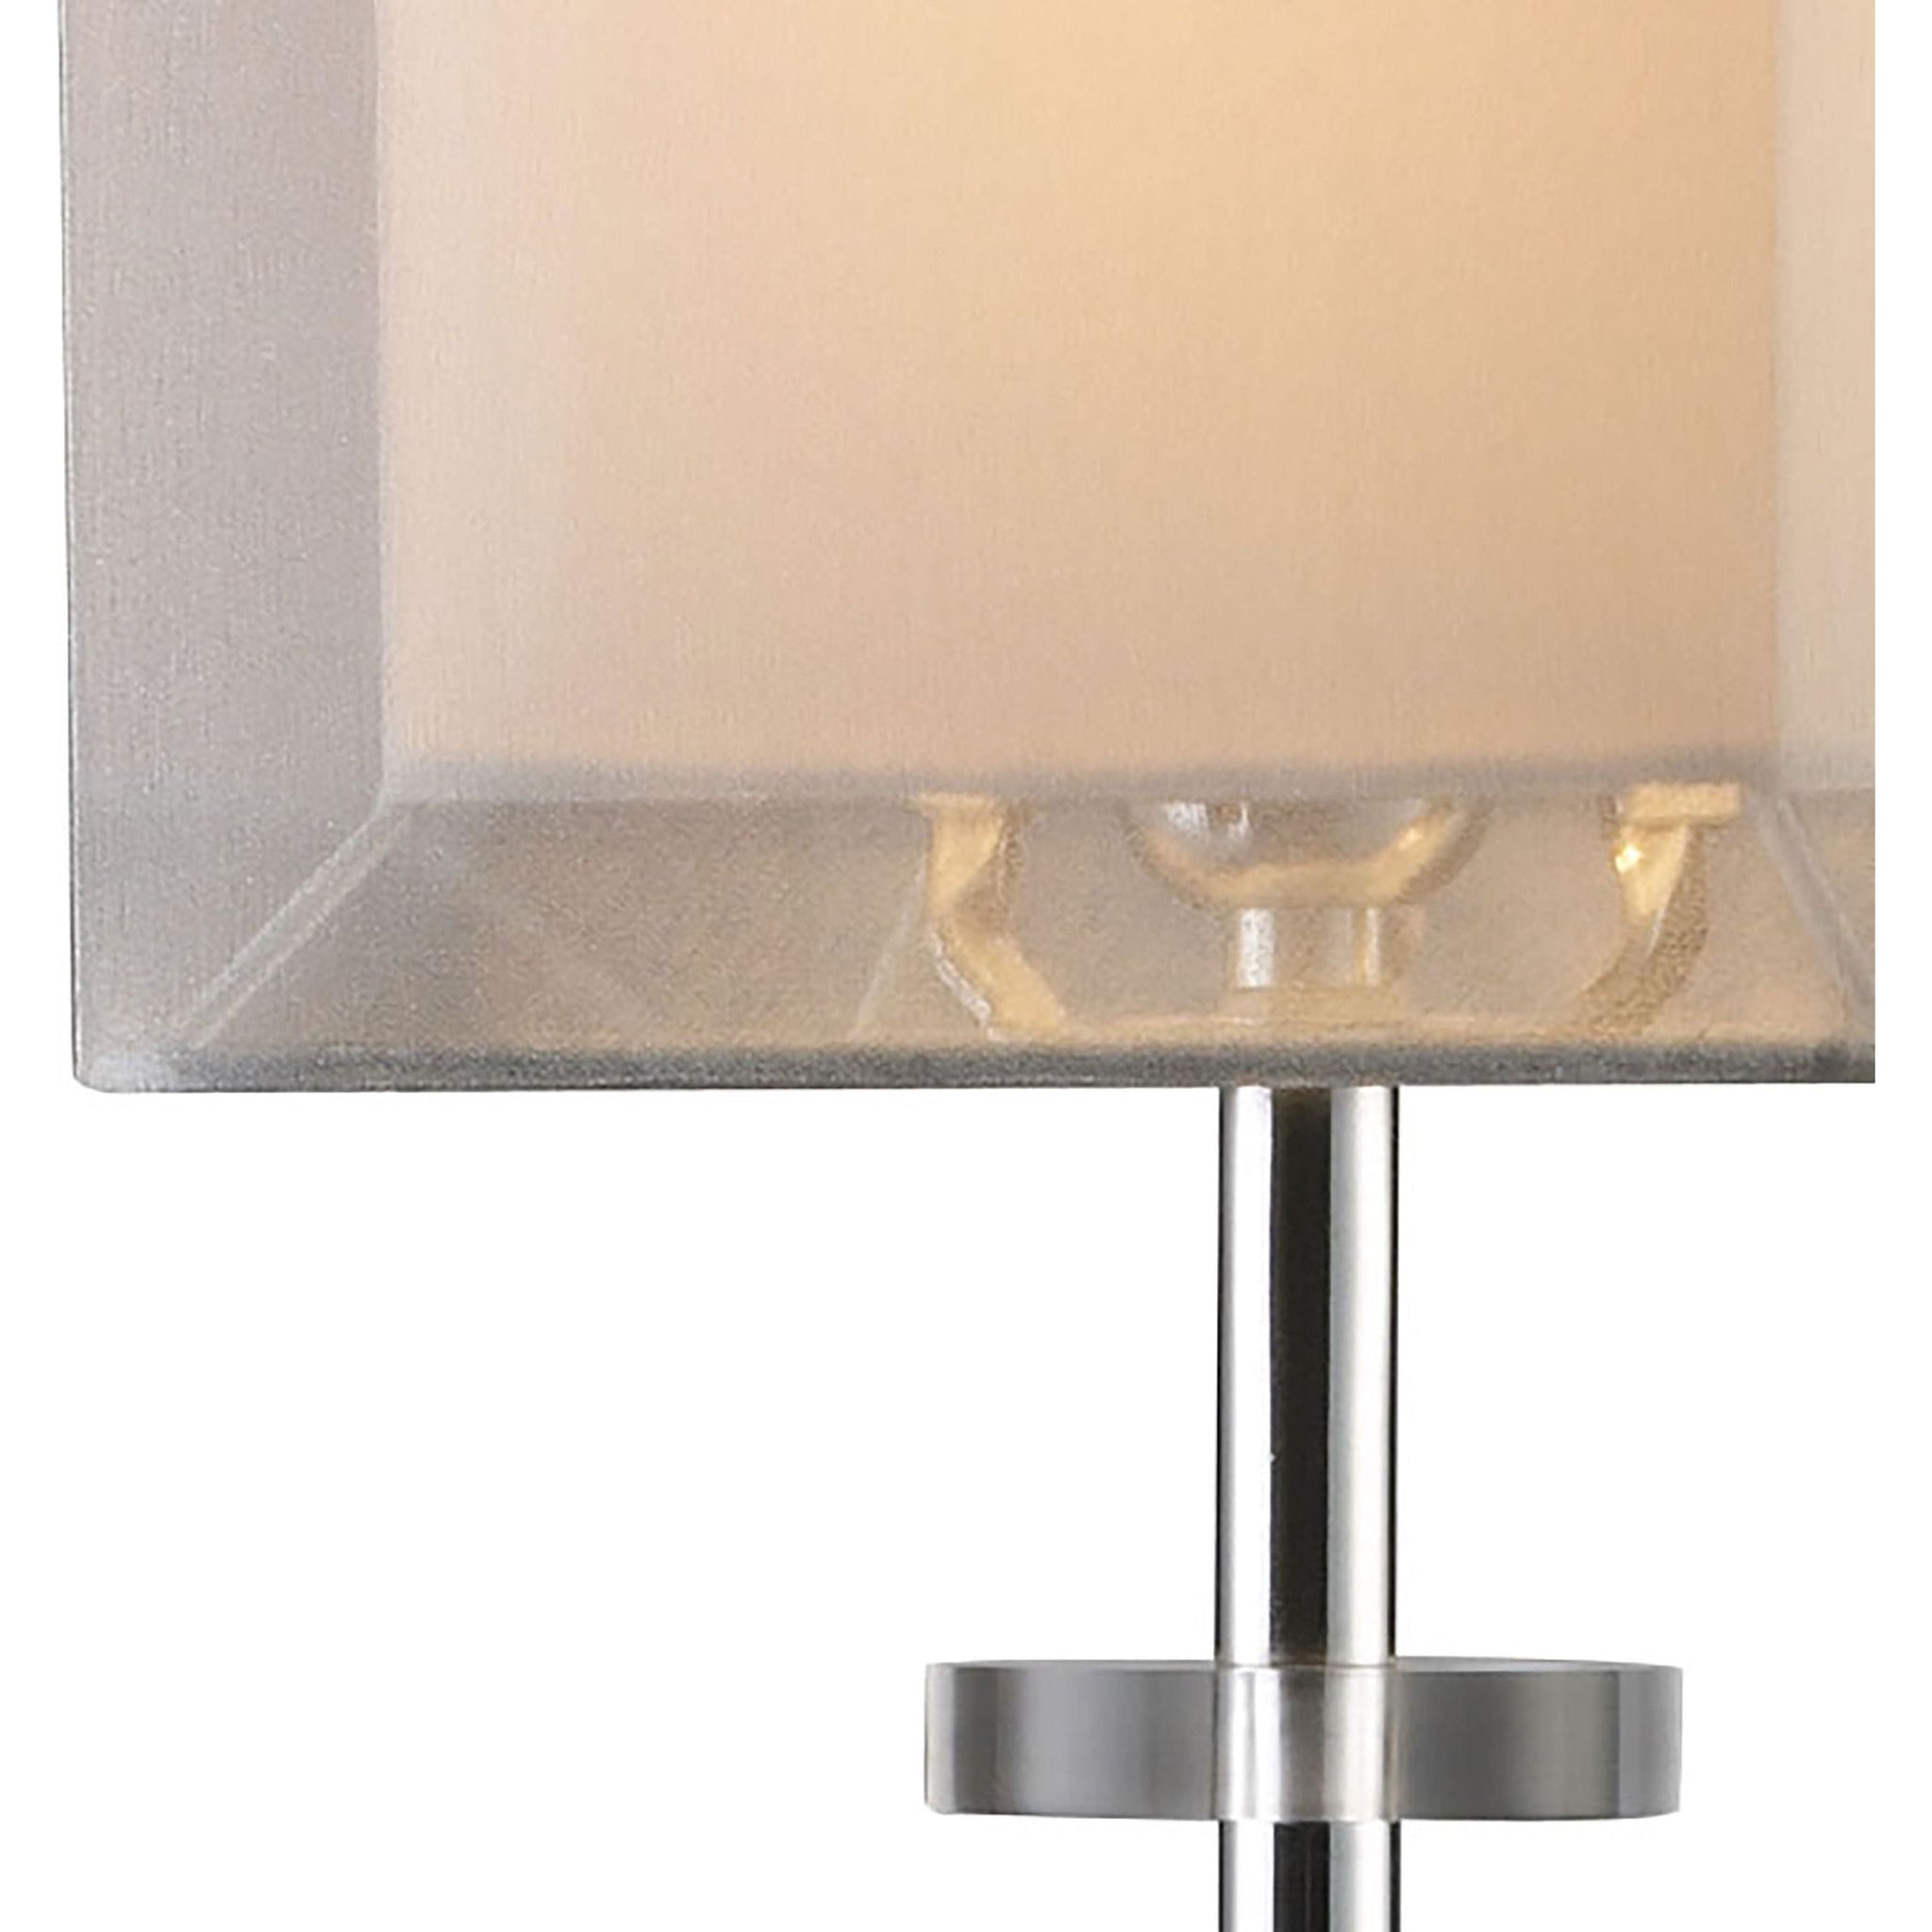 Exeter 30" High 1-Light Buffet Lamp